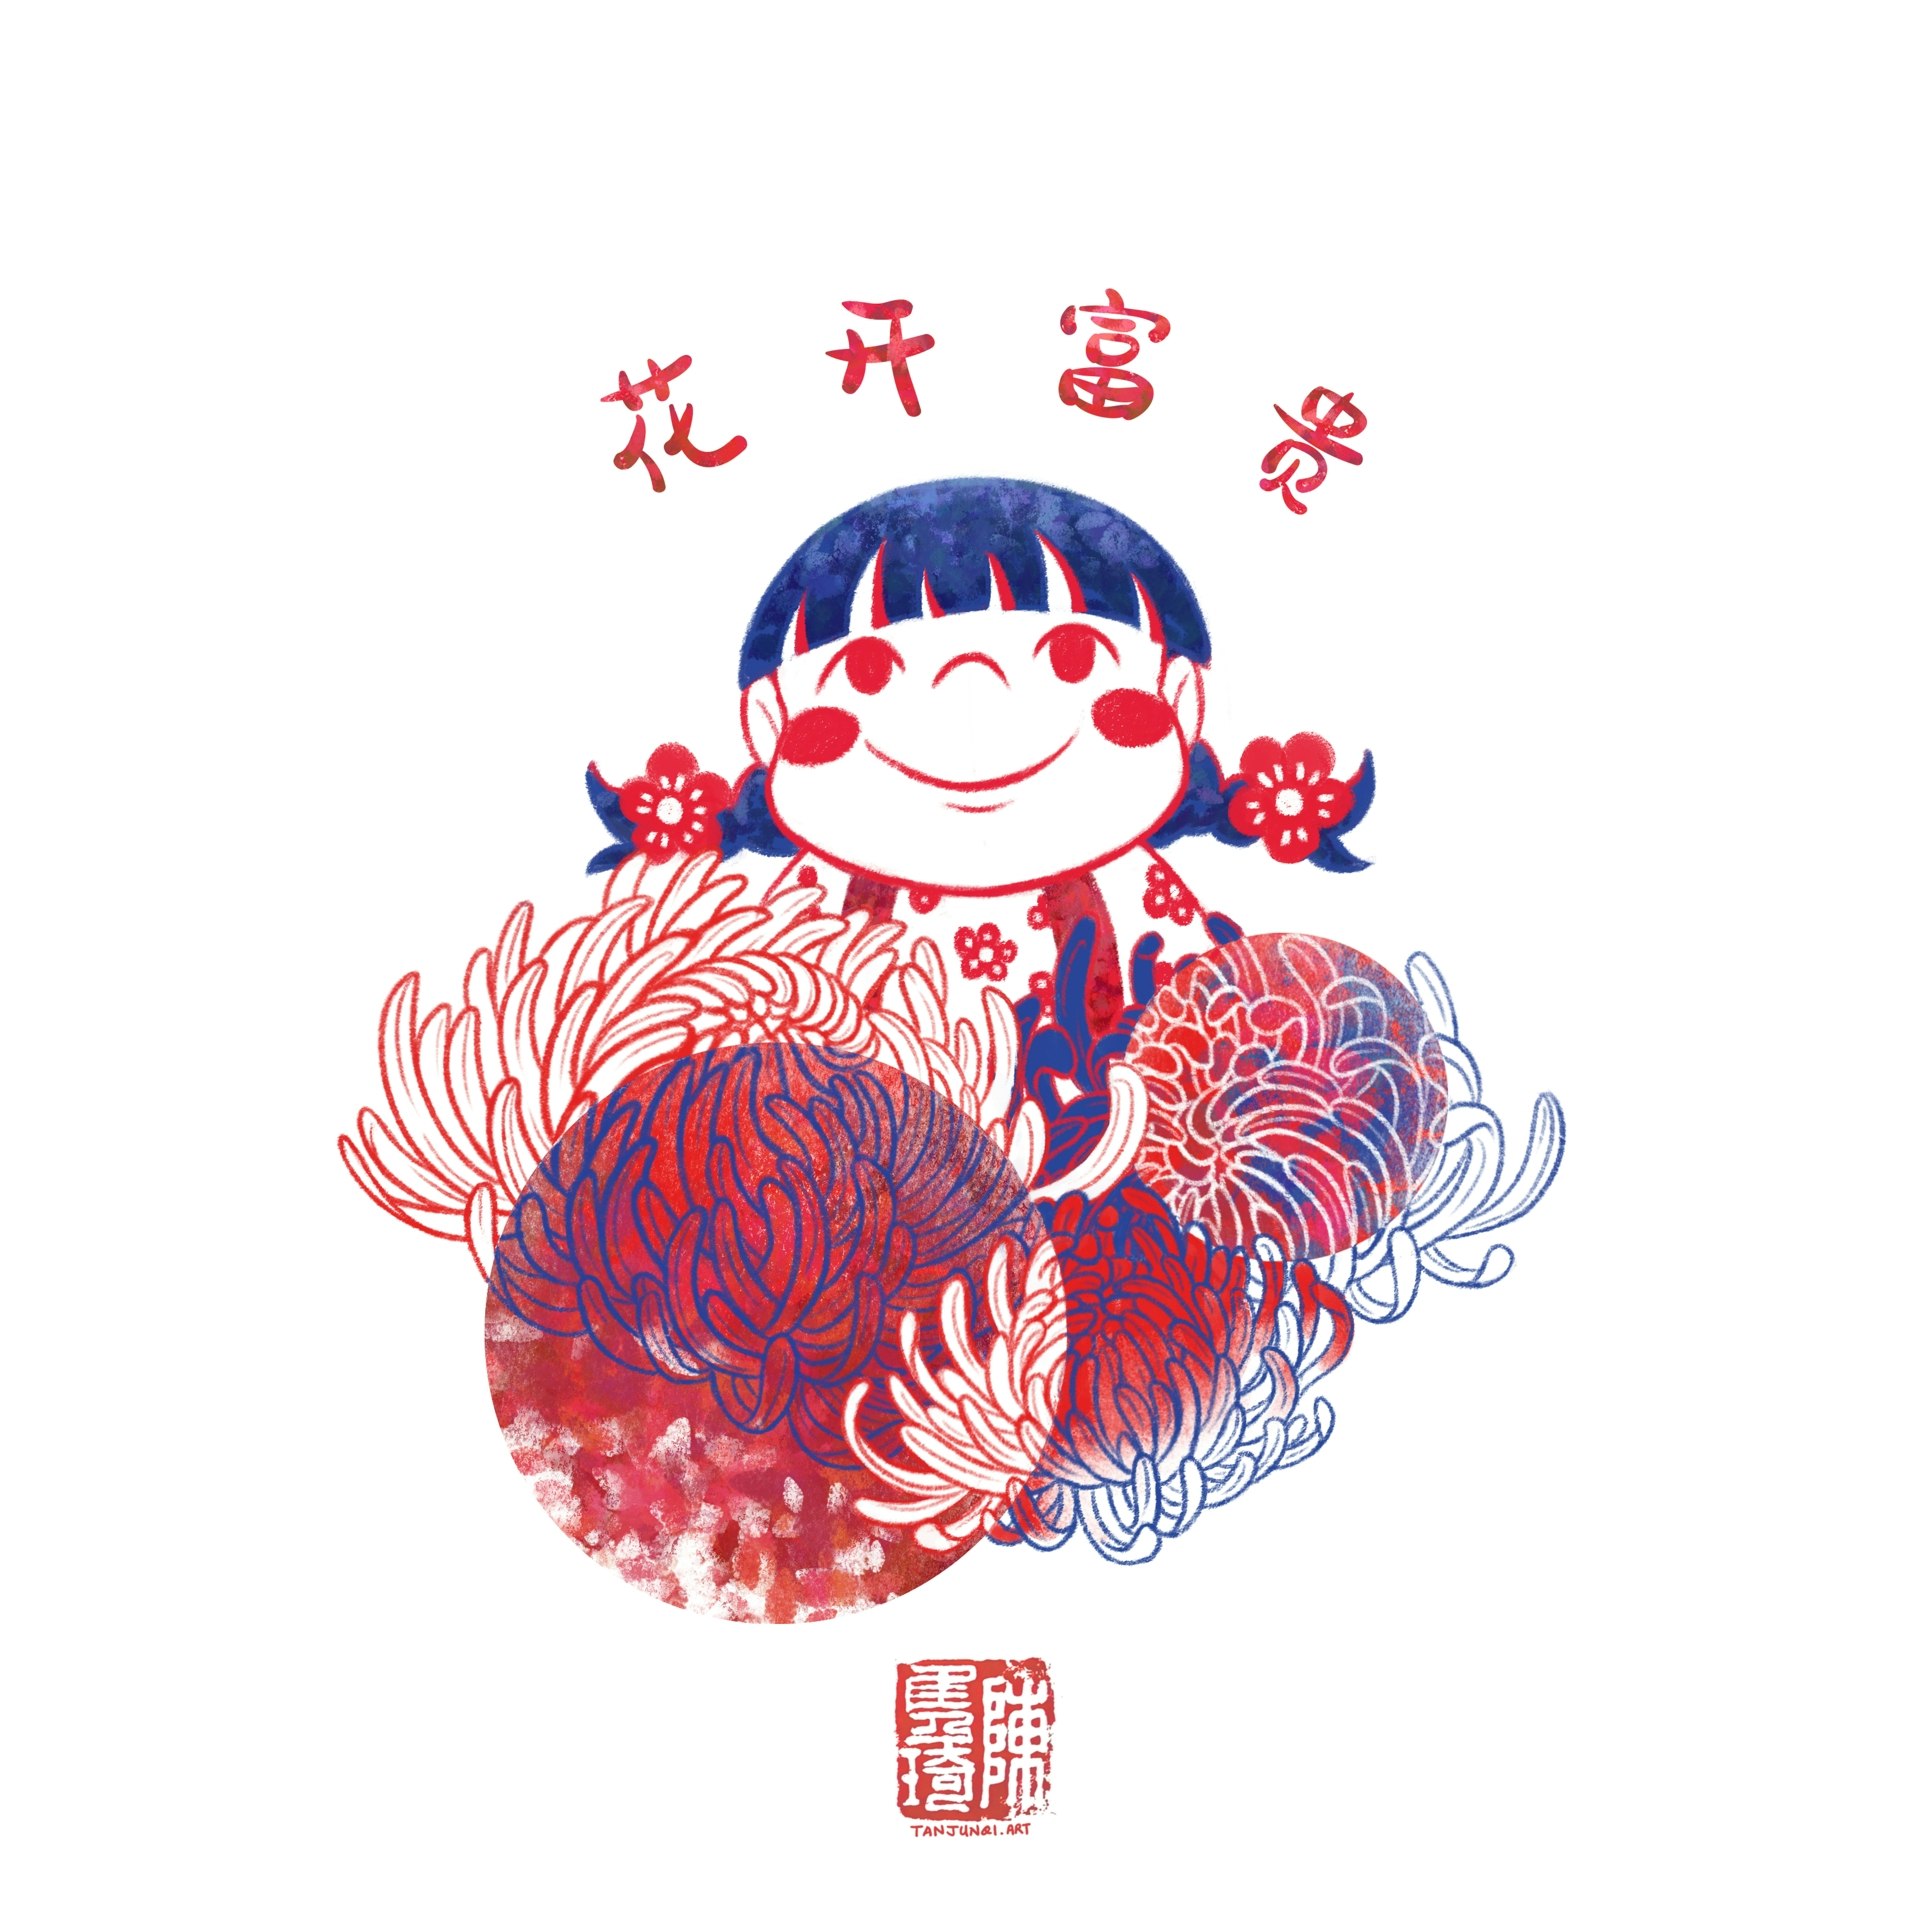 数码插画，以鲜红和深蓝色为色彩方案，描绘的是小女孩珊珊从菊花丛中露出来。上方写着「花开富贵」四个字